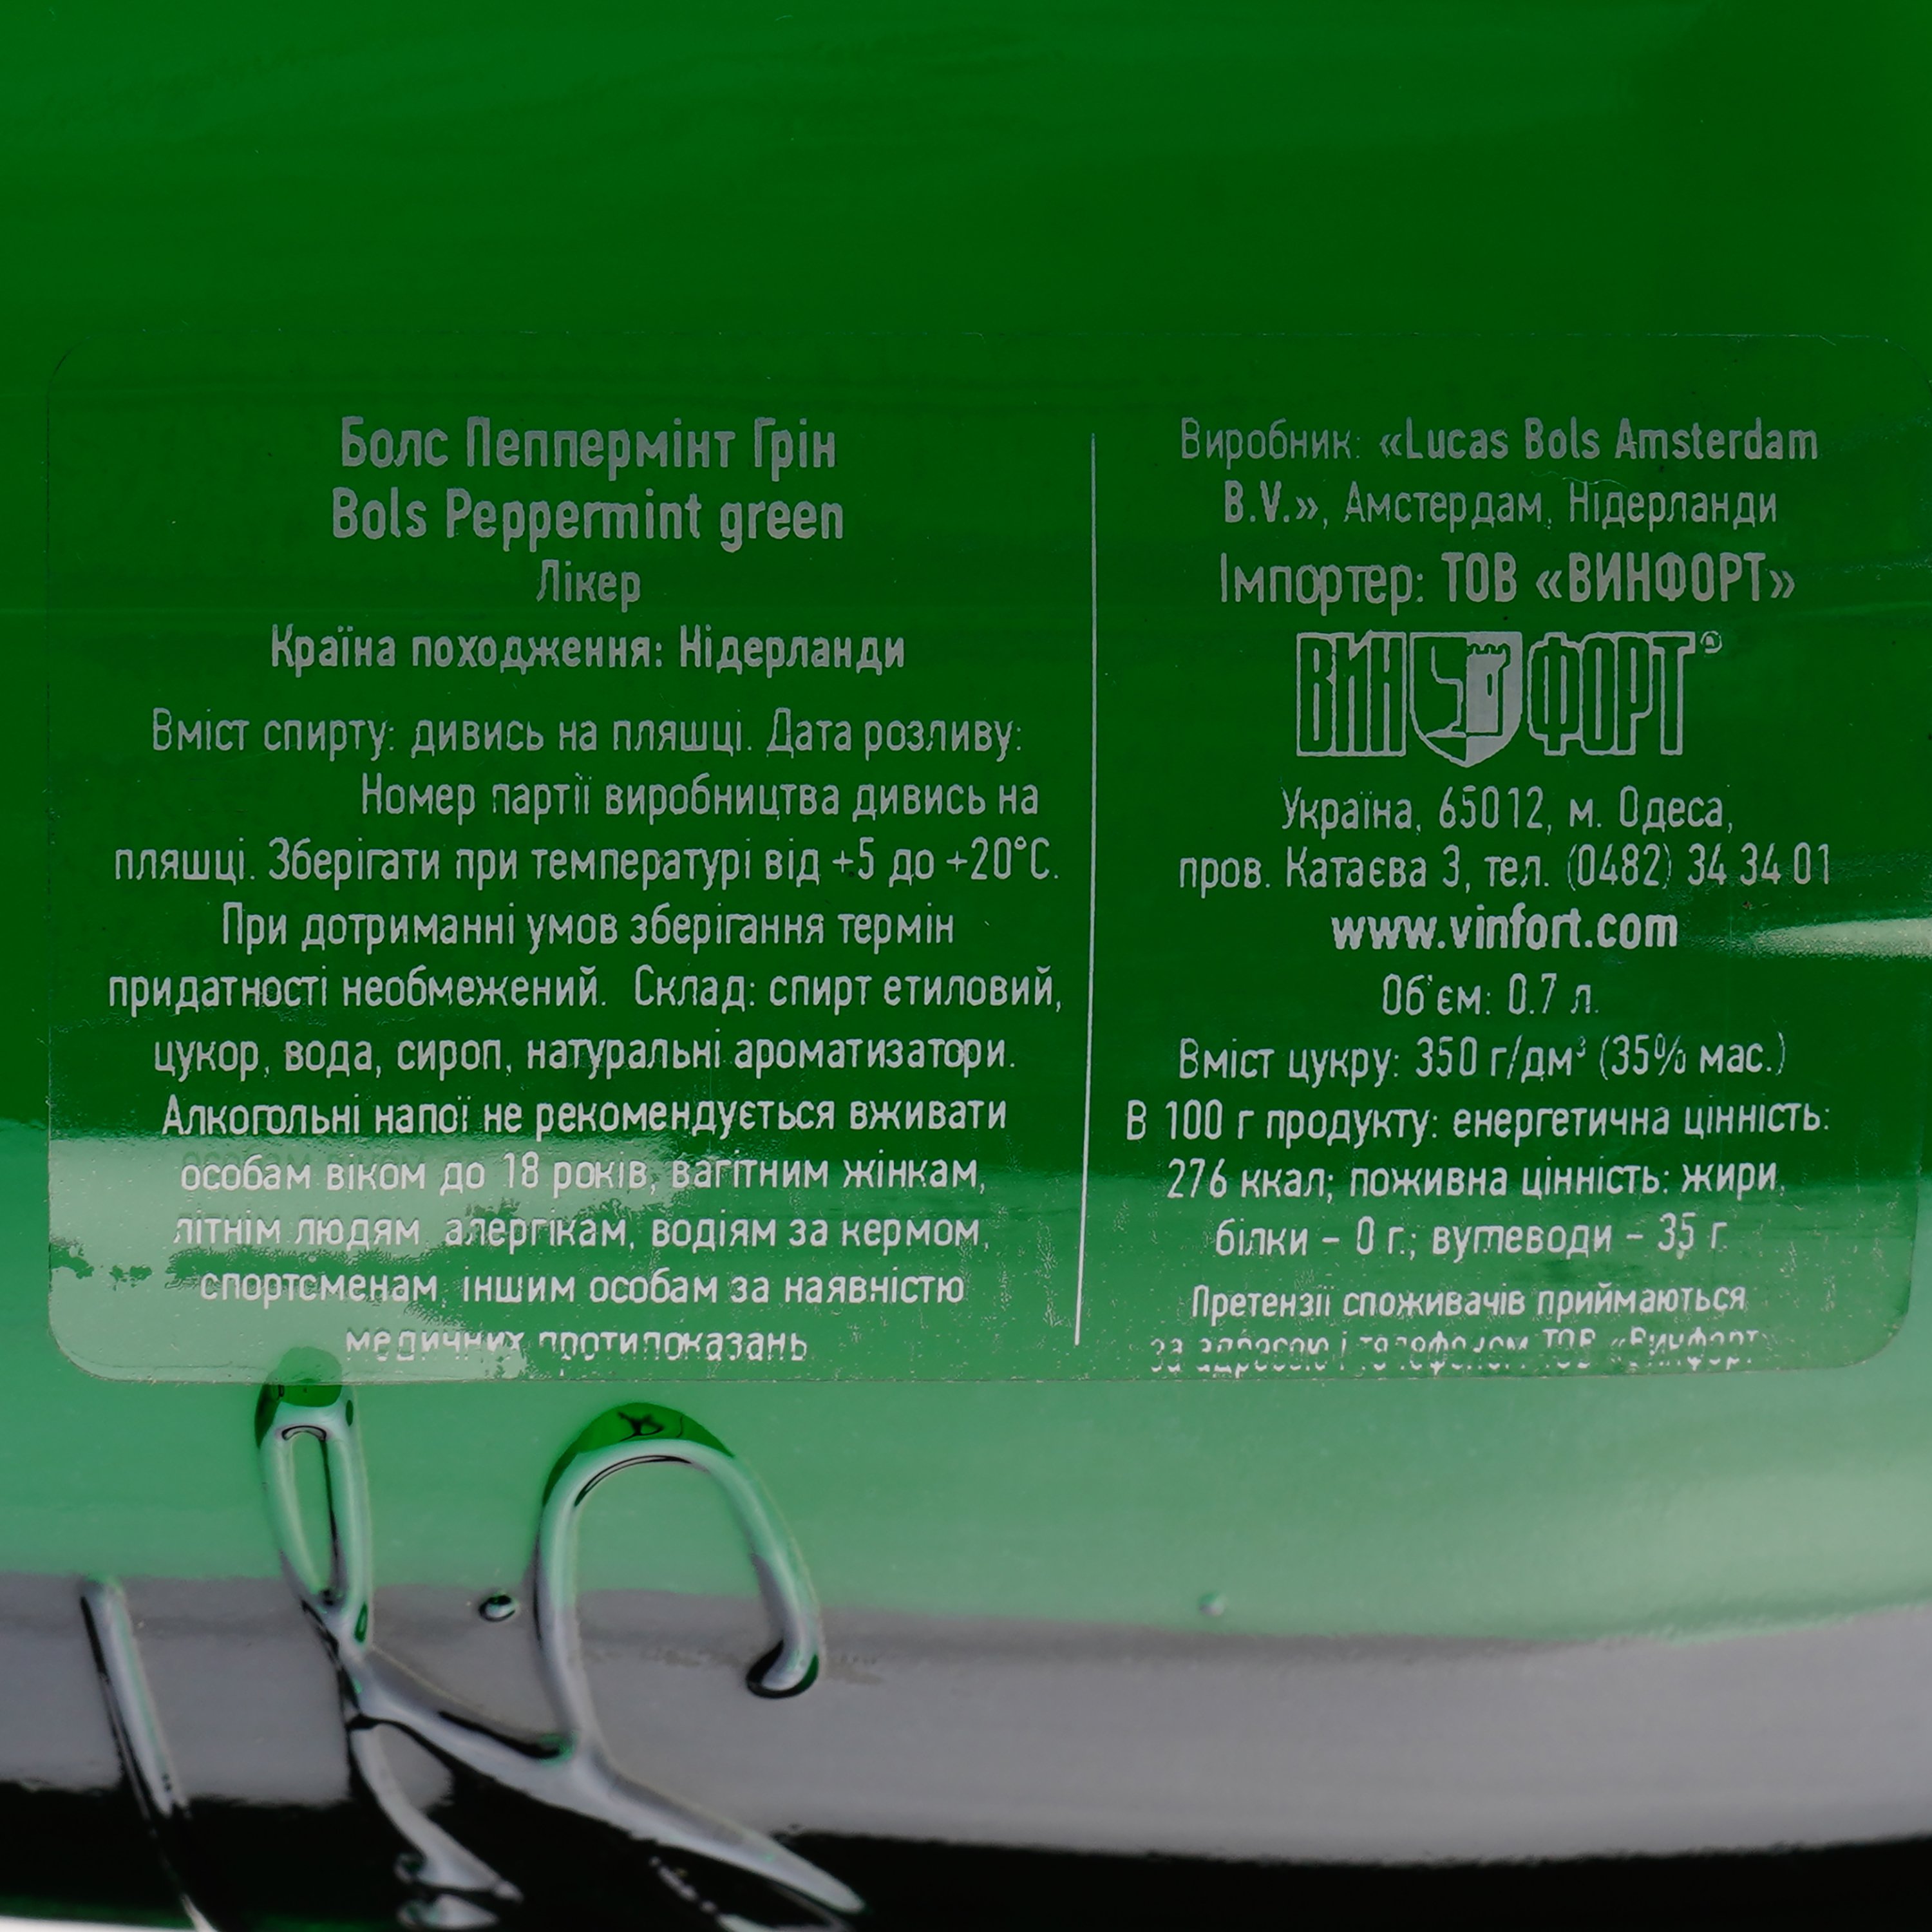 Ликер Bols Peppermint Green, 24 %, 0,7 л - фото 4